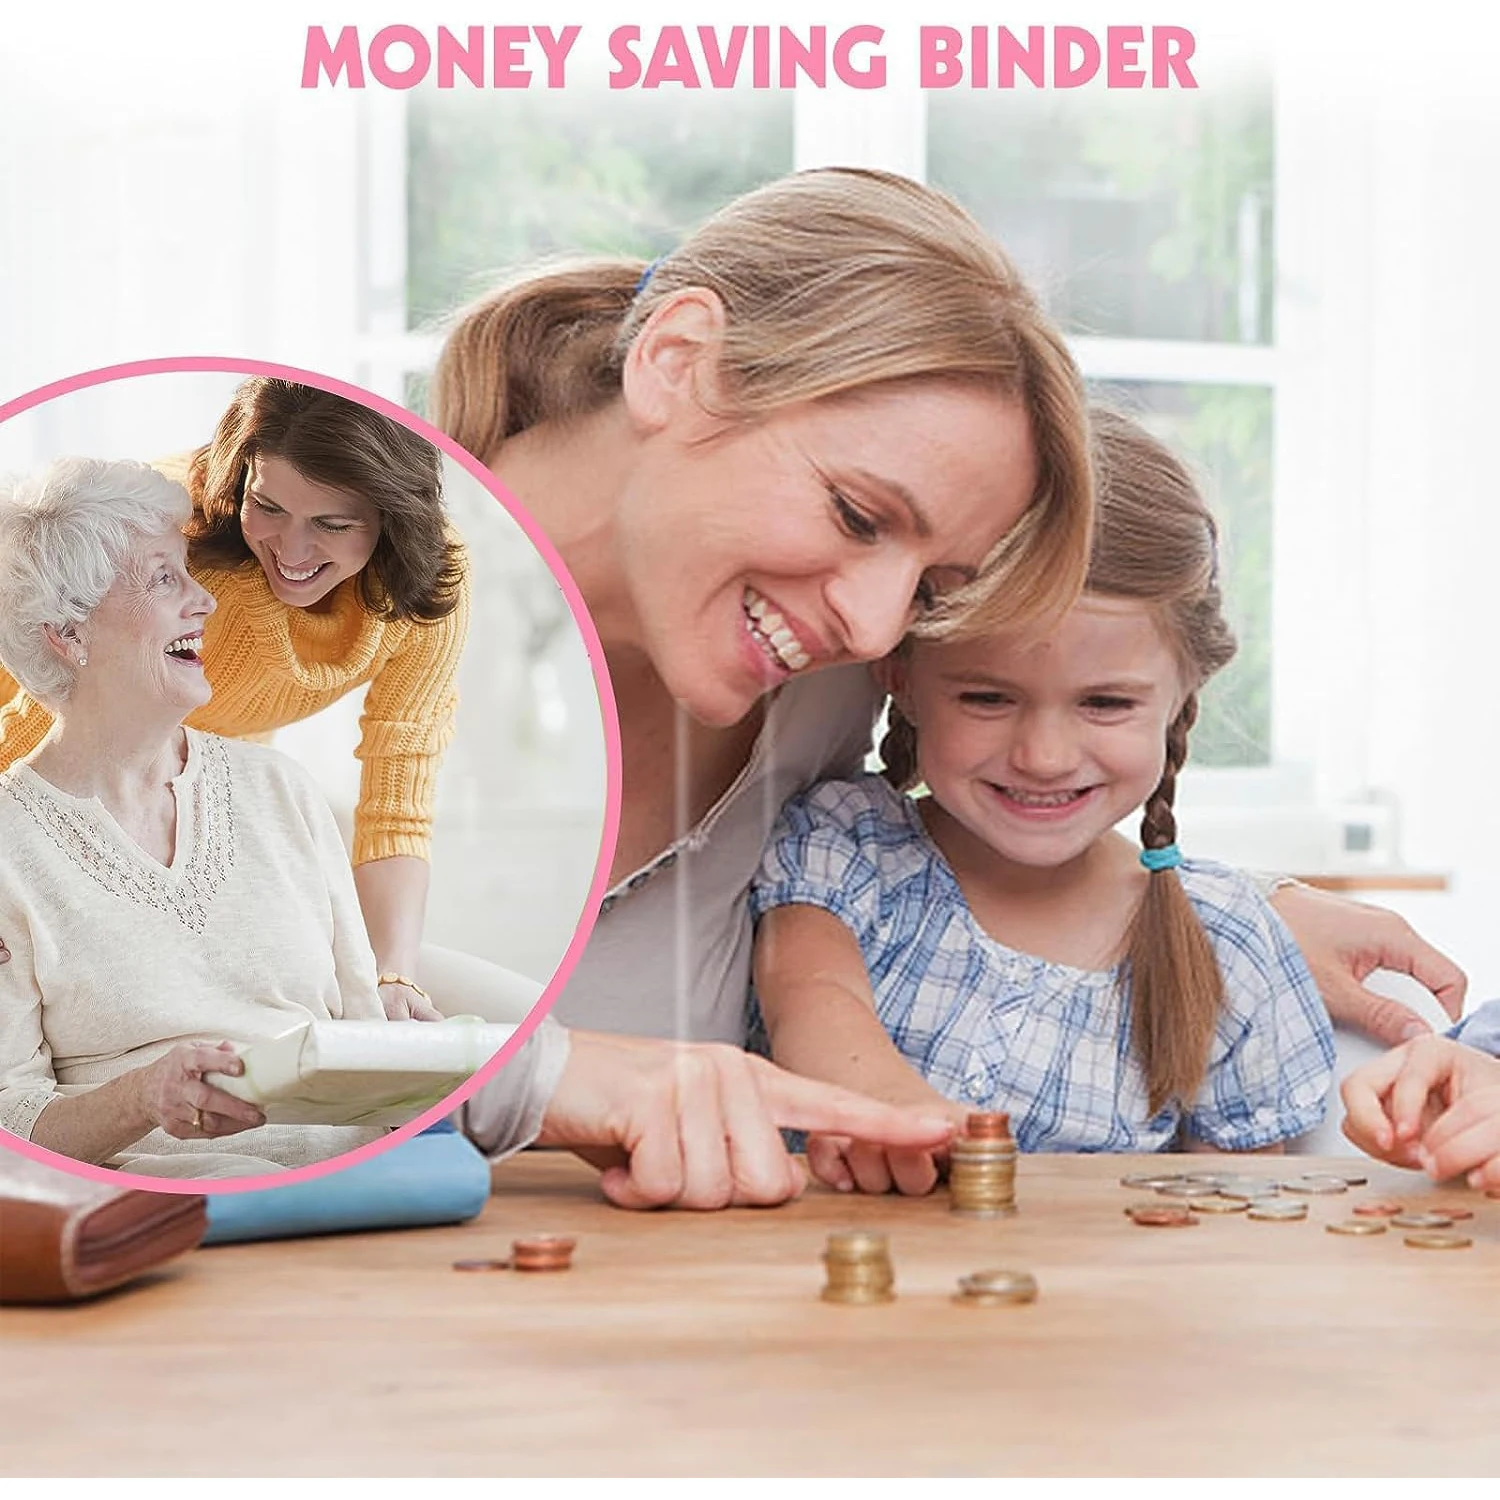 100 конвертов Challenge Binder Savings Challenges Бюджетные денежные конверты A5 Binder - простой и увлекательный способ сэкономить 5 050 долларов5